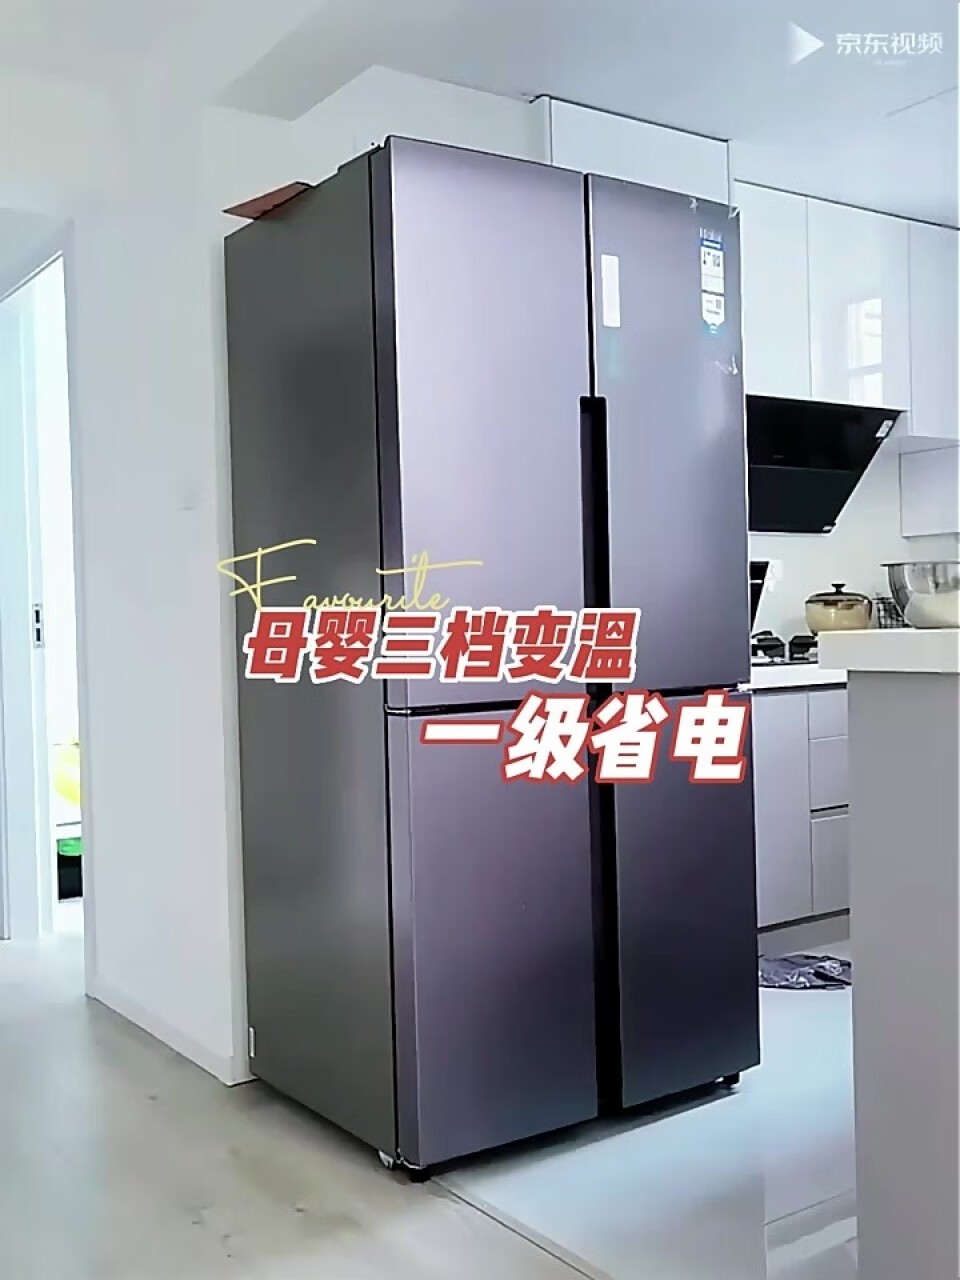 海尔 (Haier)536升双变频风冷无霜 十字门对开四门冰箱 一级能效节能省电 干湿分储家用电冰箱 BCD-536WGHTDD9N9U1,第3张